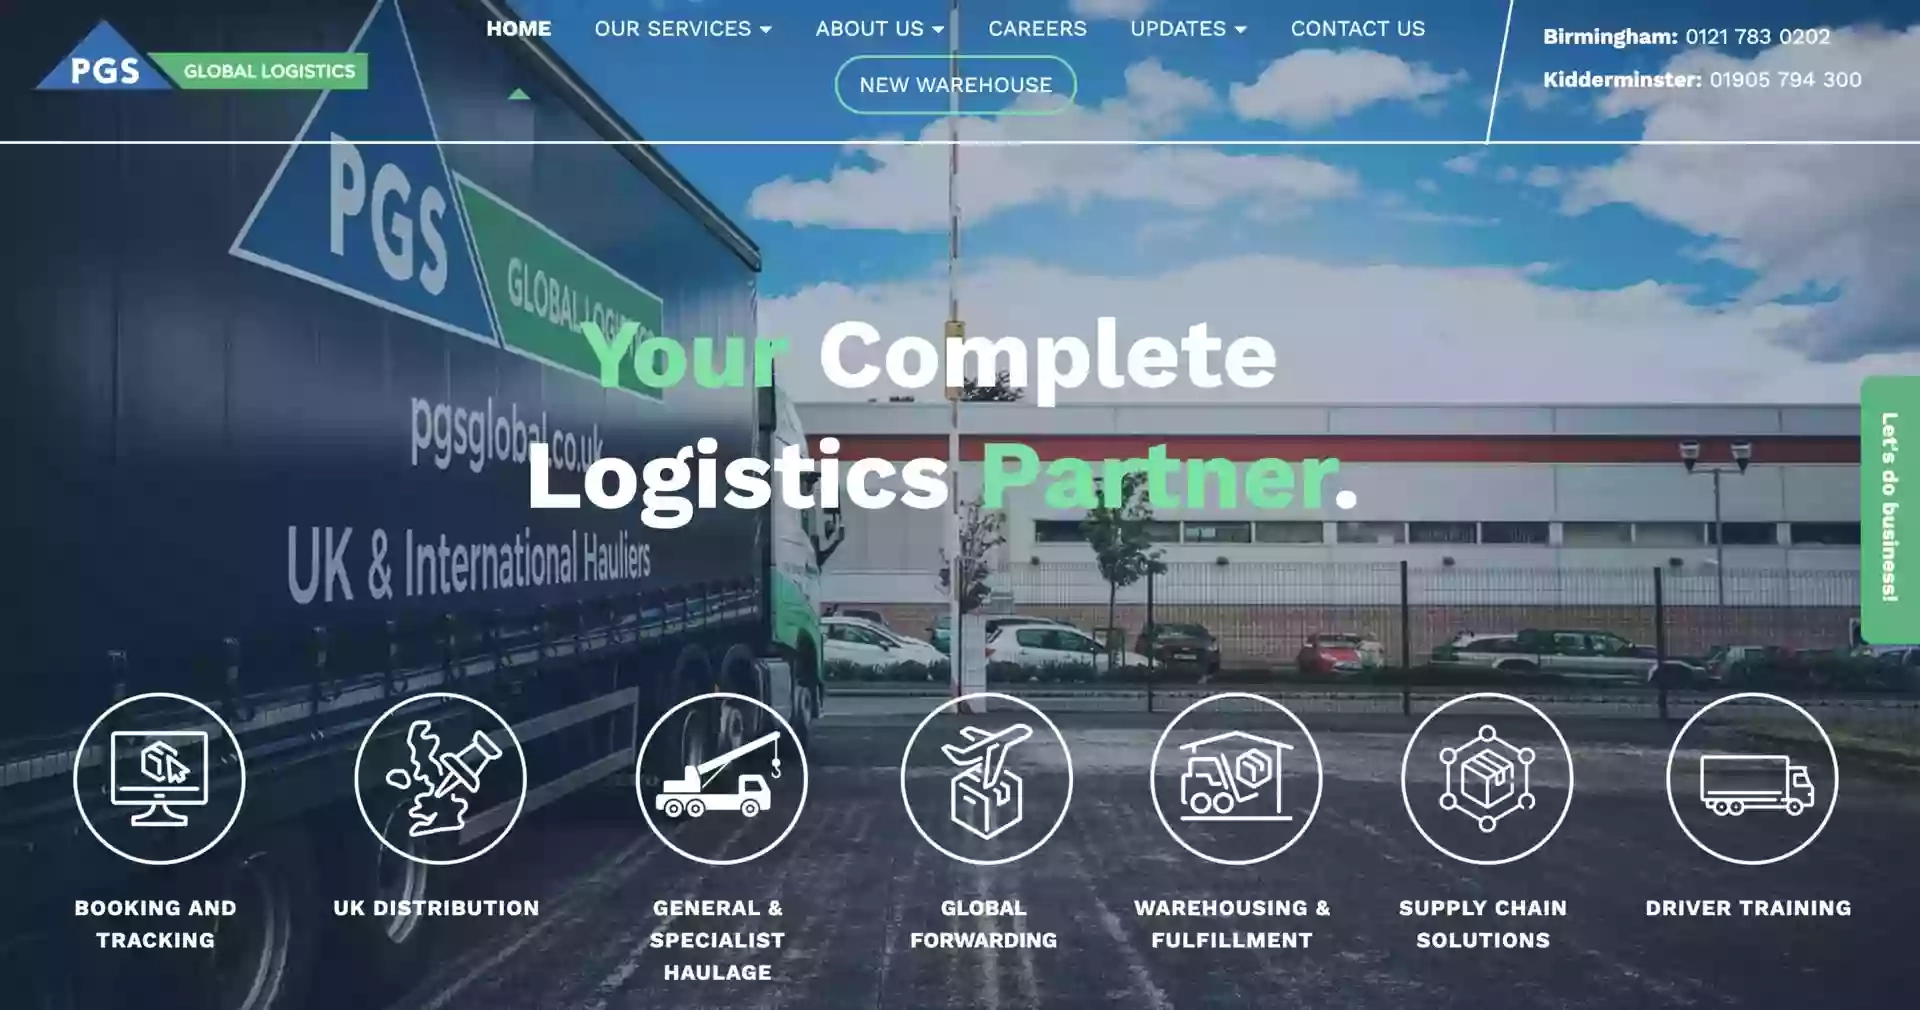 PGS Global Logistics